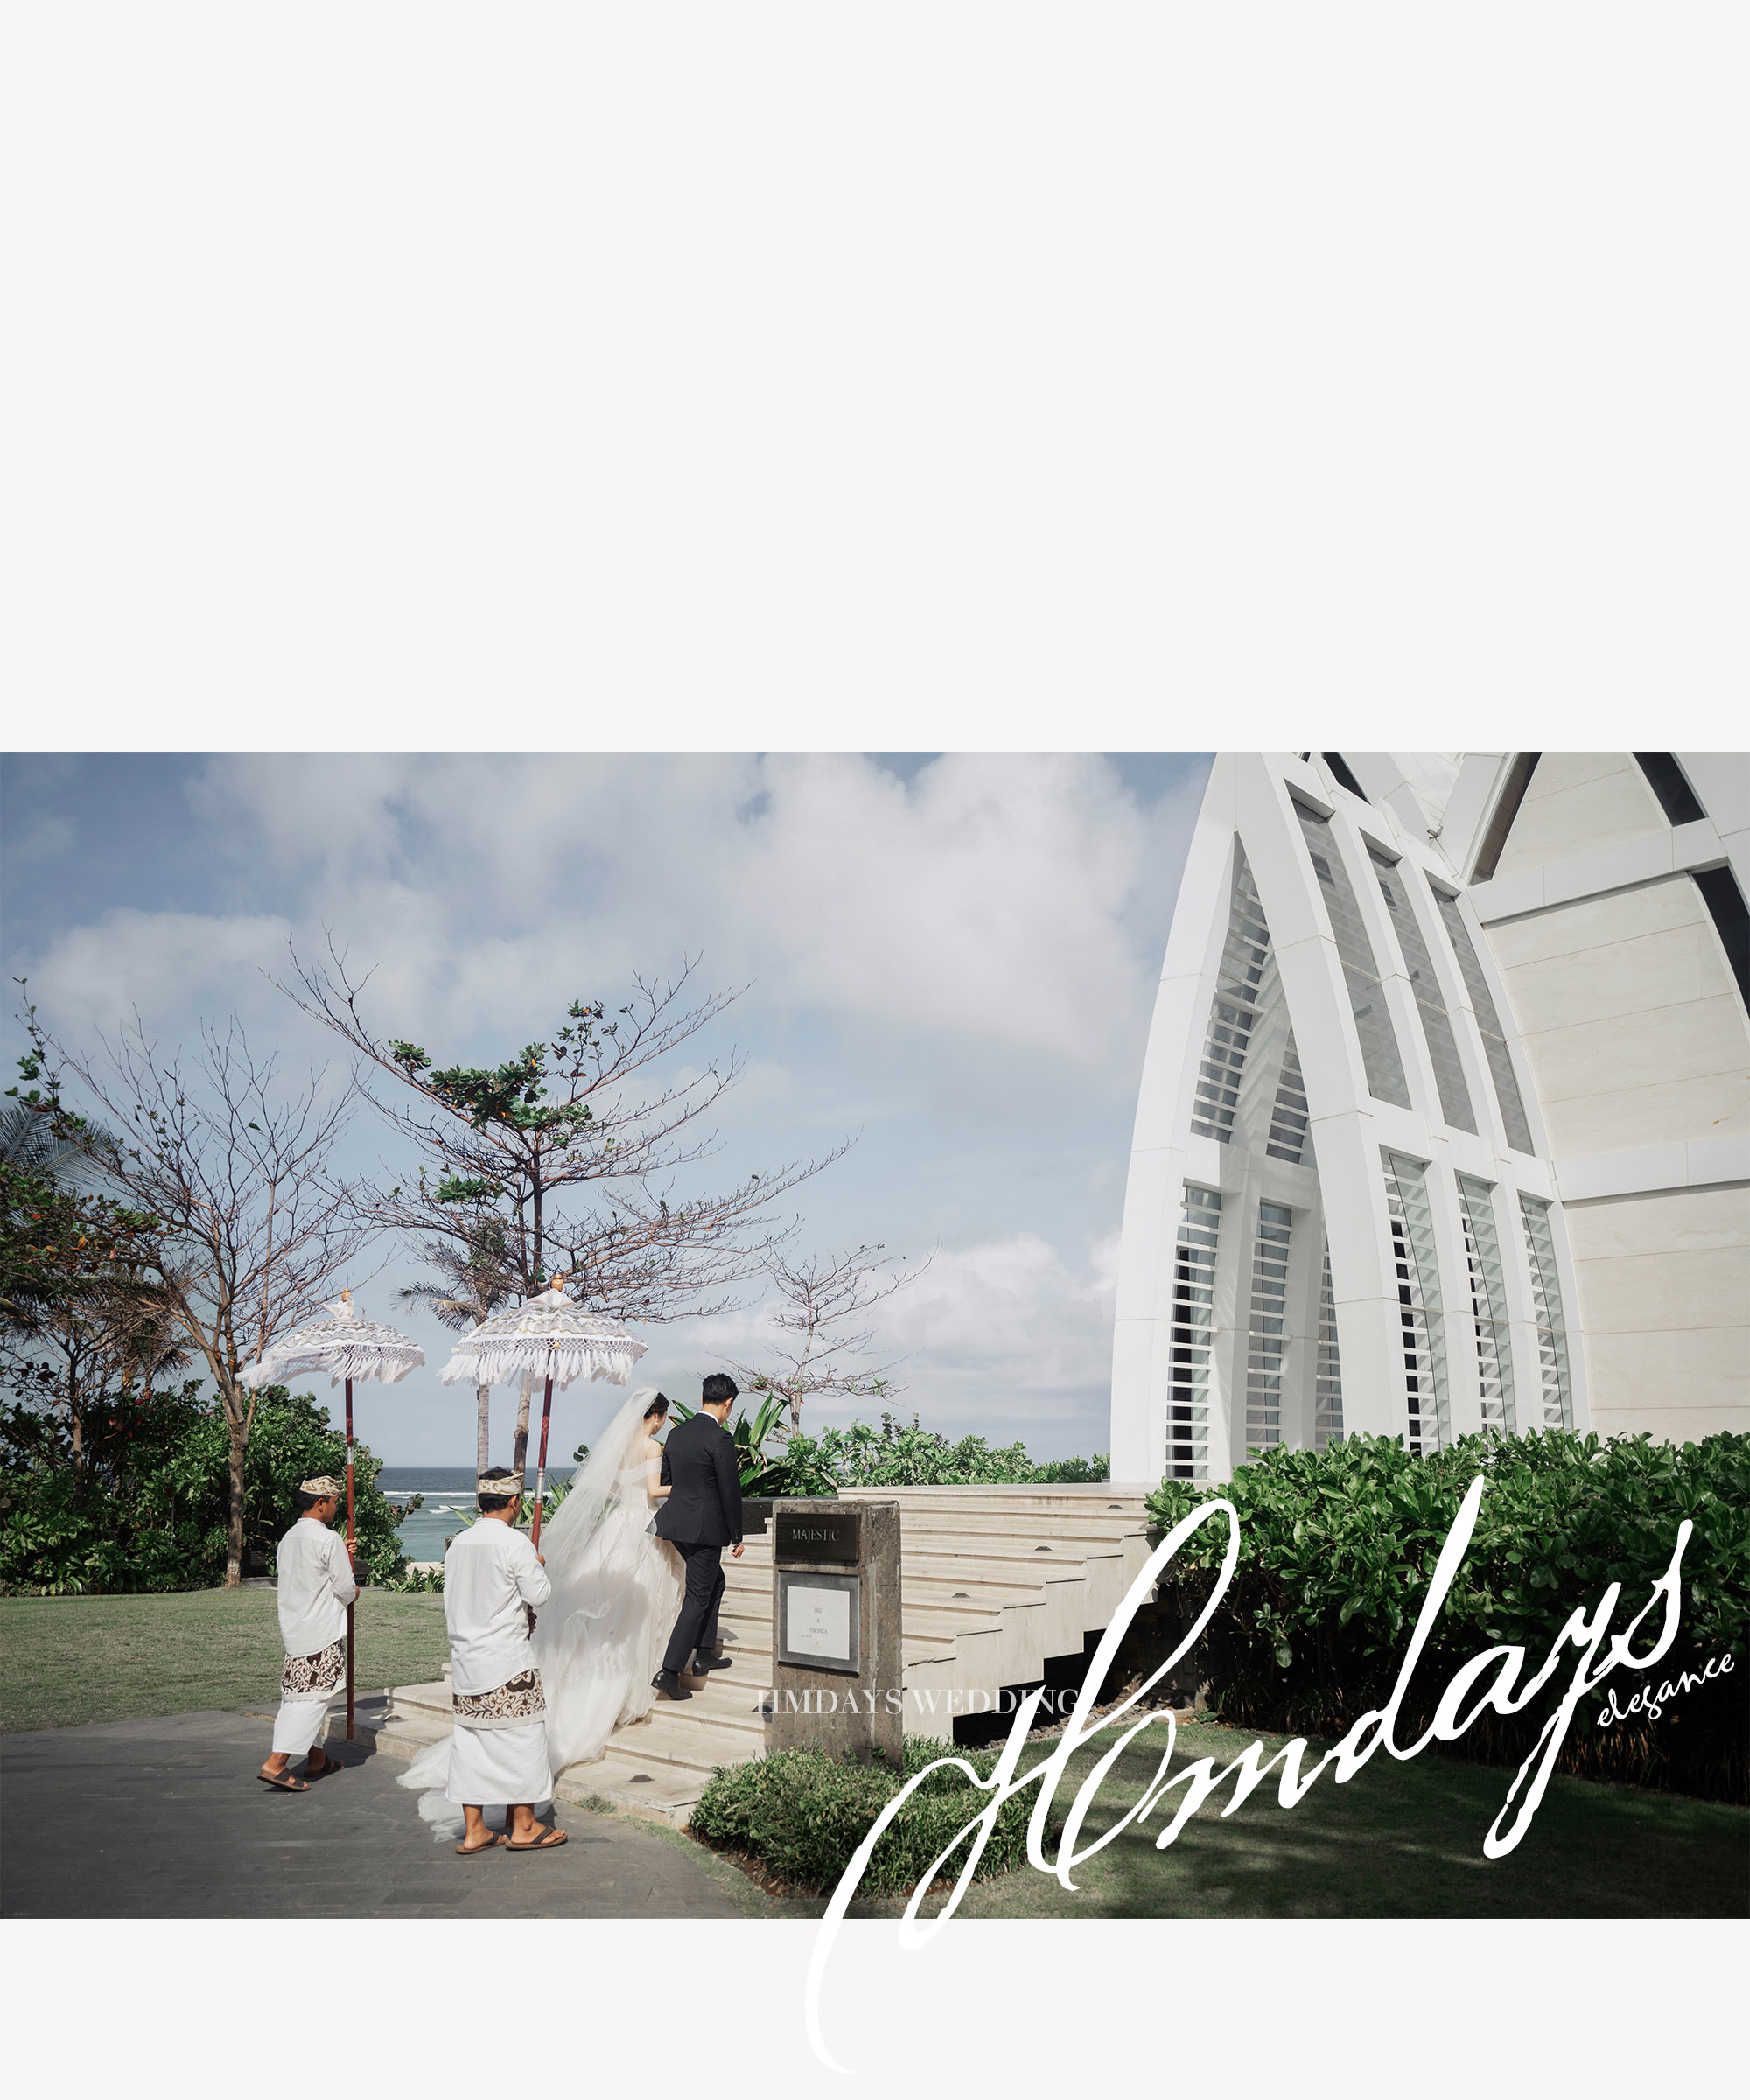 巴厘岛丽思卡尔顿教堂婚礼||海外婚礼